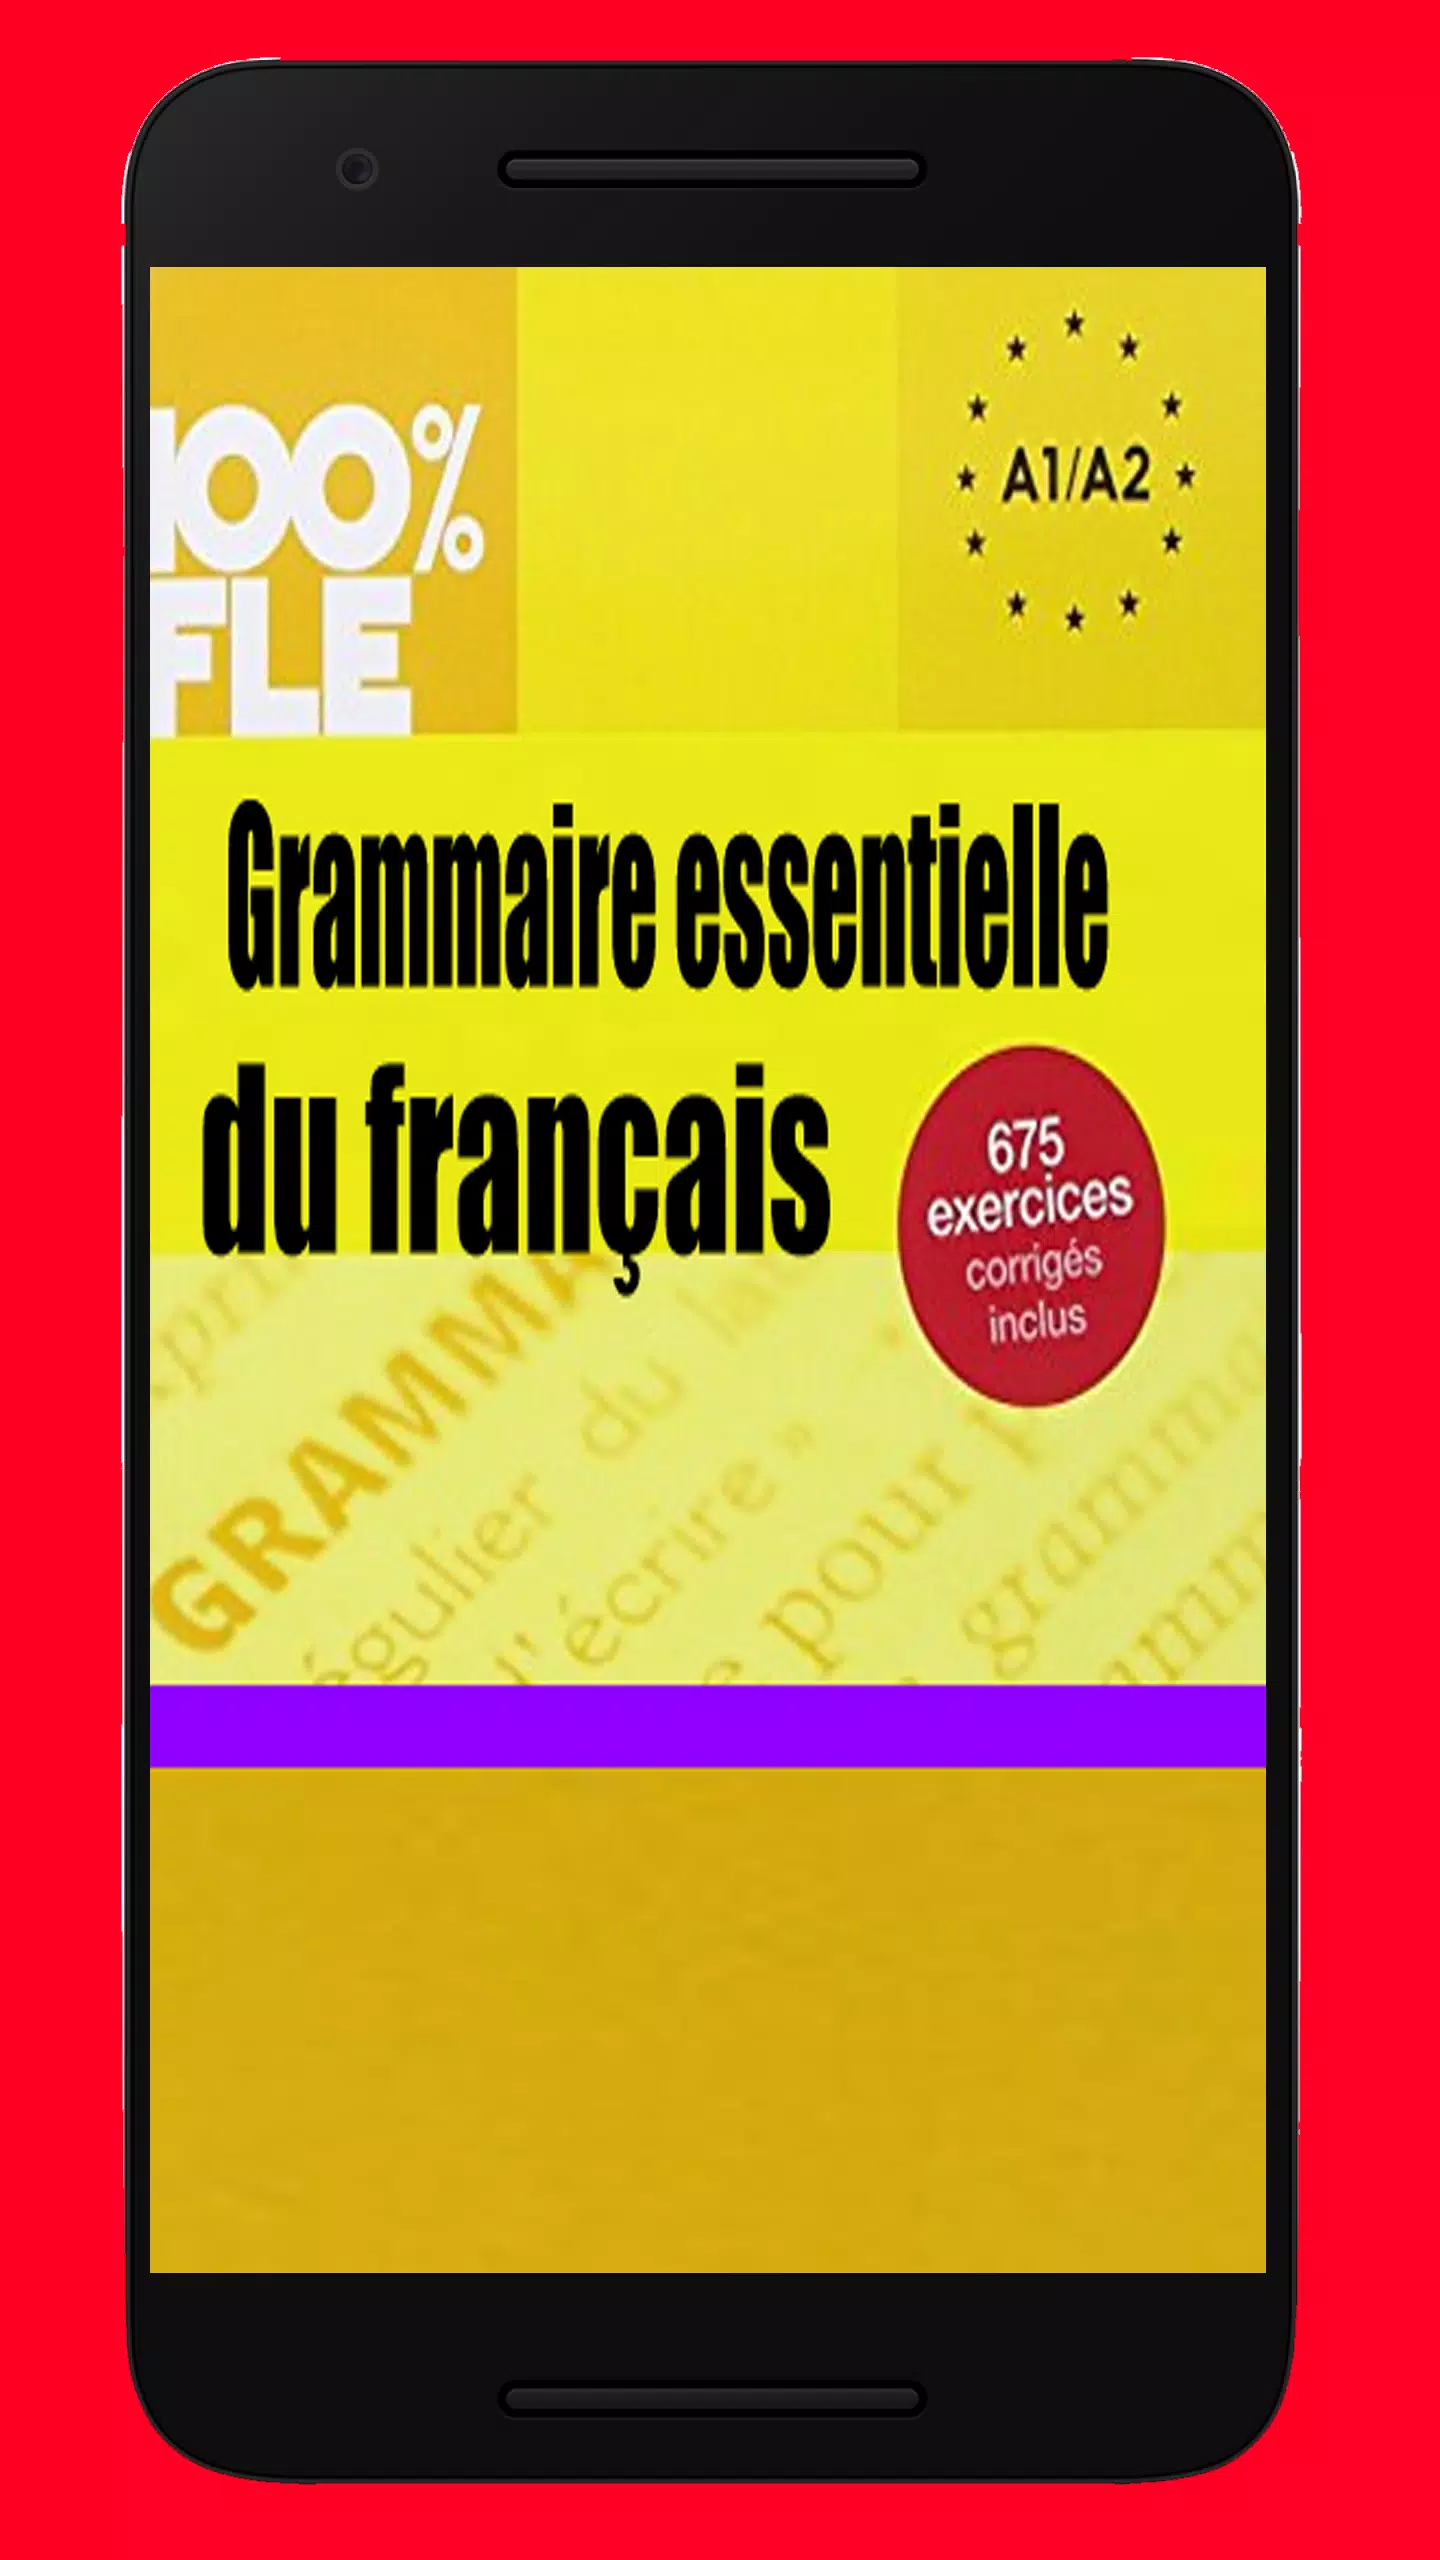 Grammaire essentielle du français niveau A1 A2 APK for Android Download